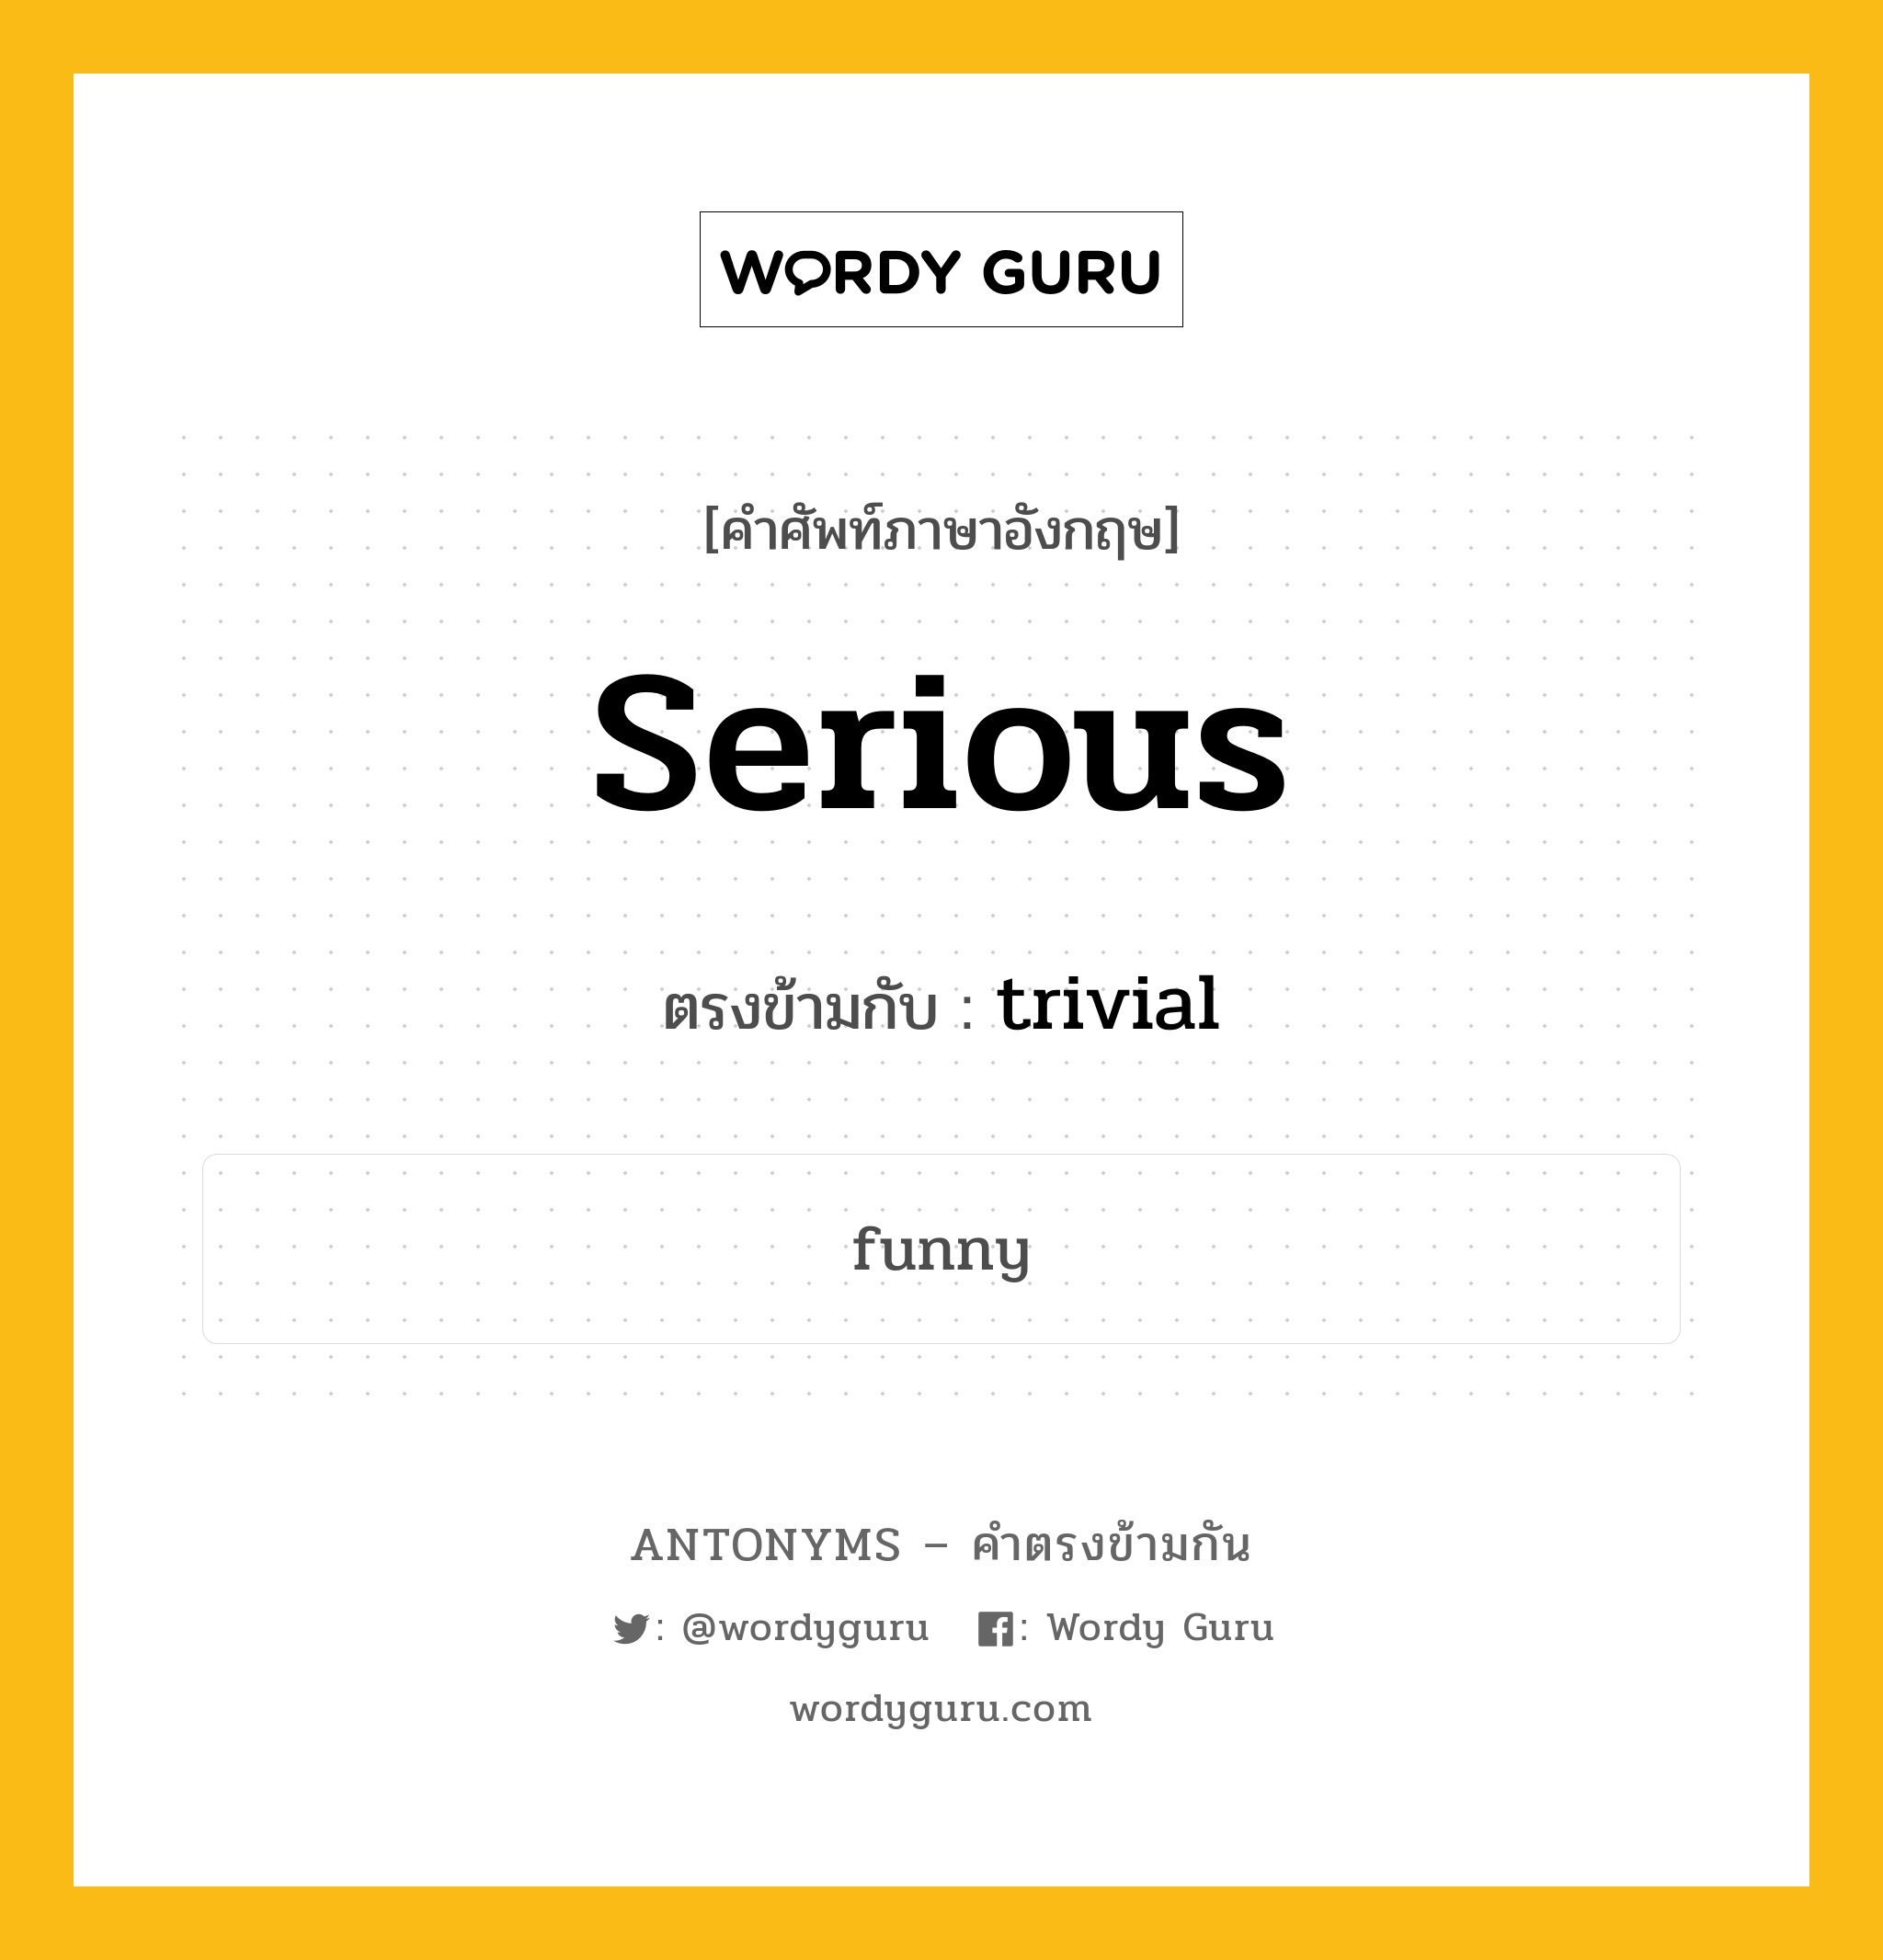 serious เป็นคำตรงข้ามกับคำไหนบ้าง?, คำศัพท์ภาษาอังกฤษ serious ตรงข้ามกับ trivial หมวด trivial